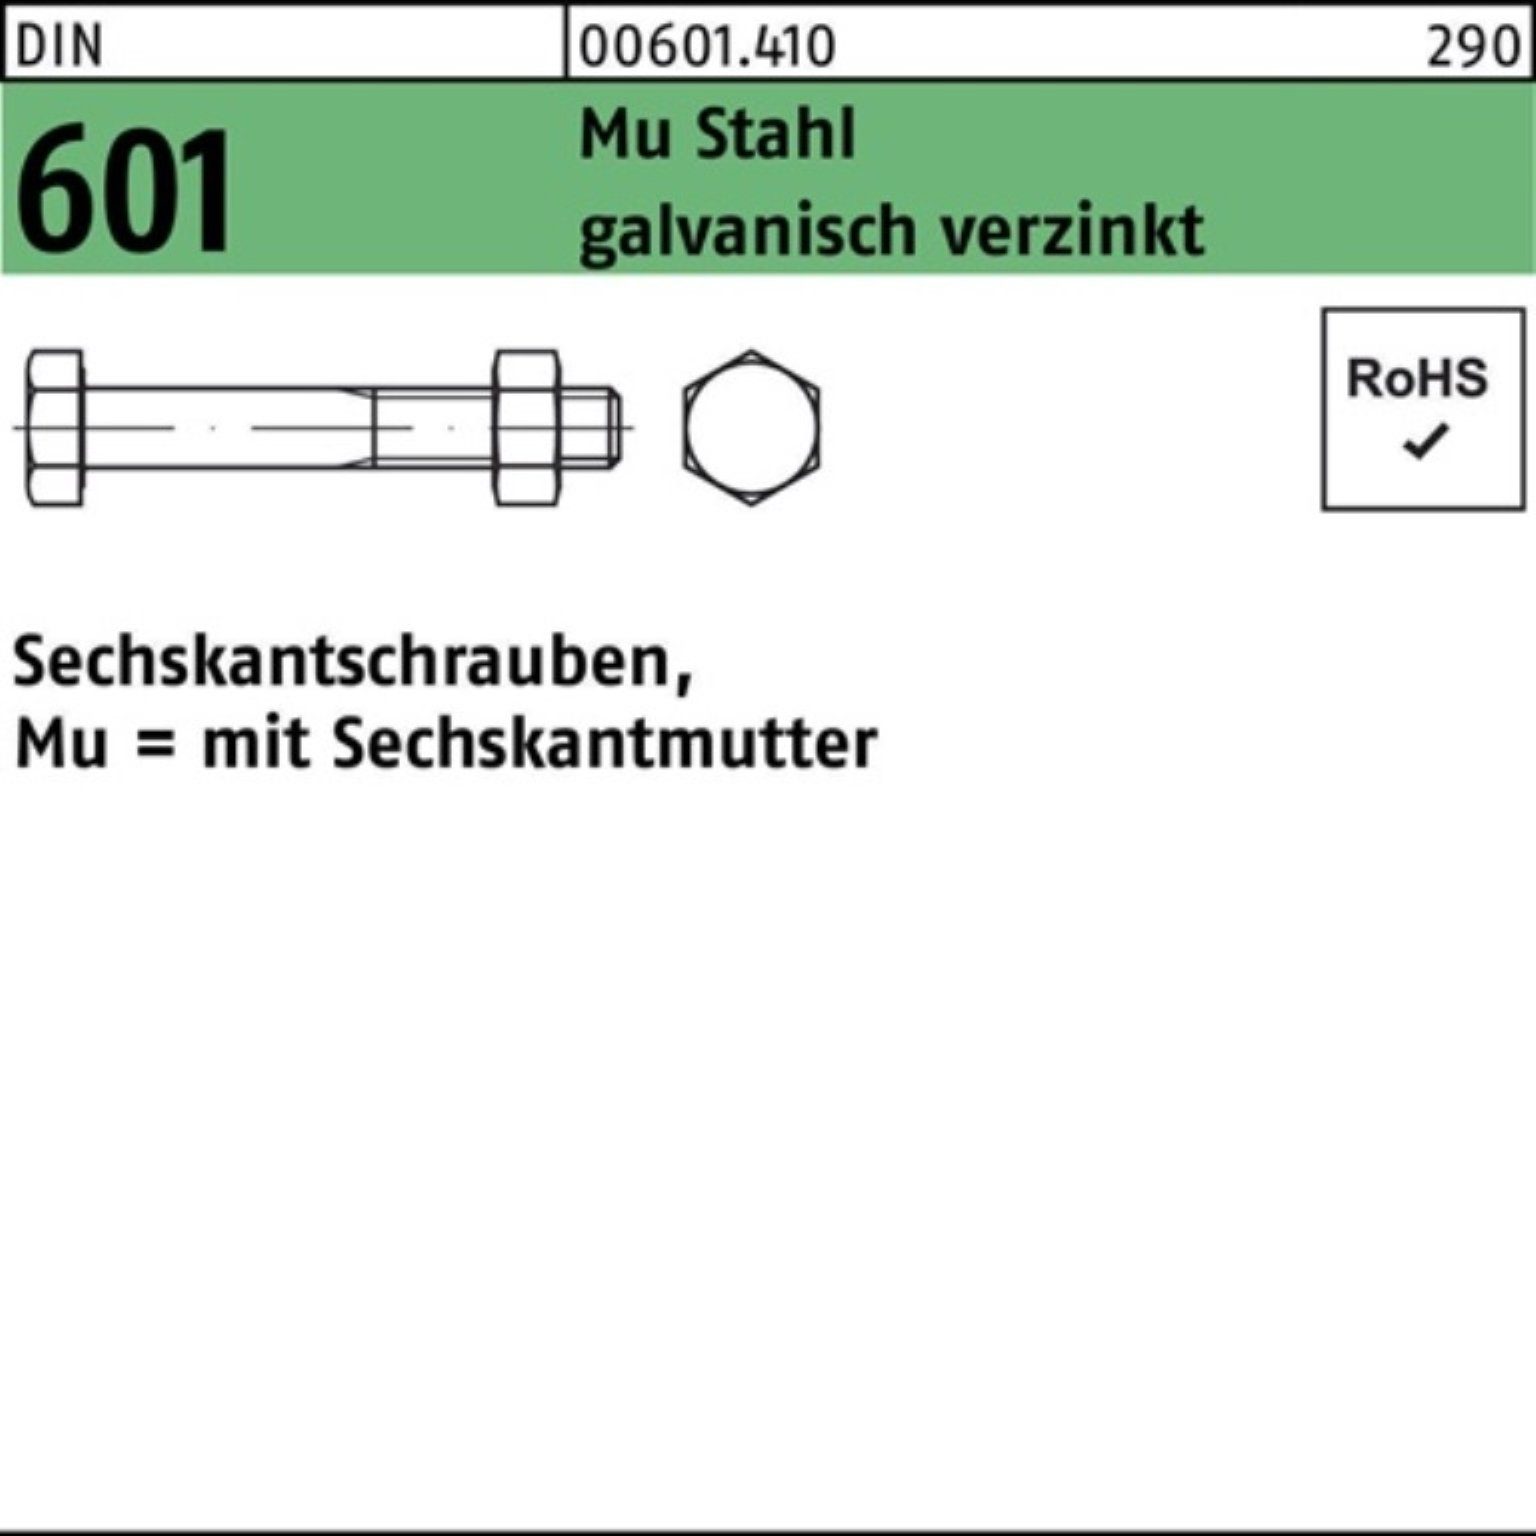 Reyher Sechskantmutter 200er Pack Sechskantschraube DIN 601 Sechskantmutter M6x65 Mu Stahl 4.